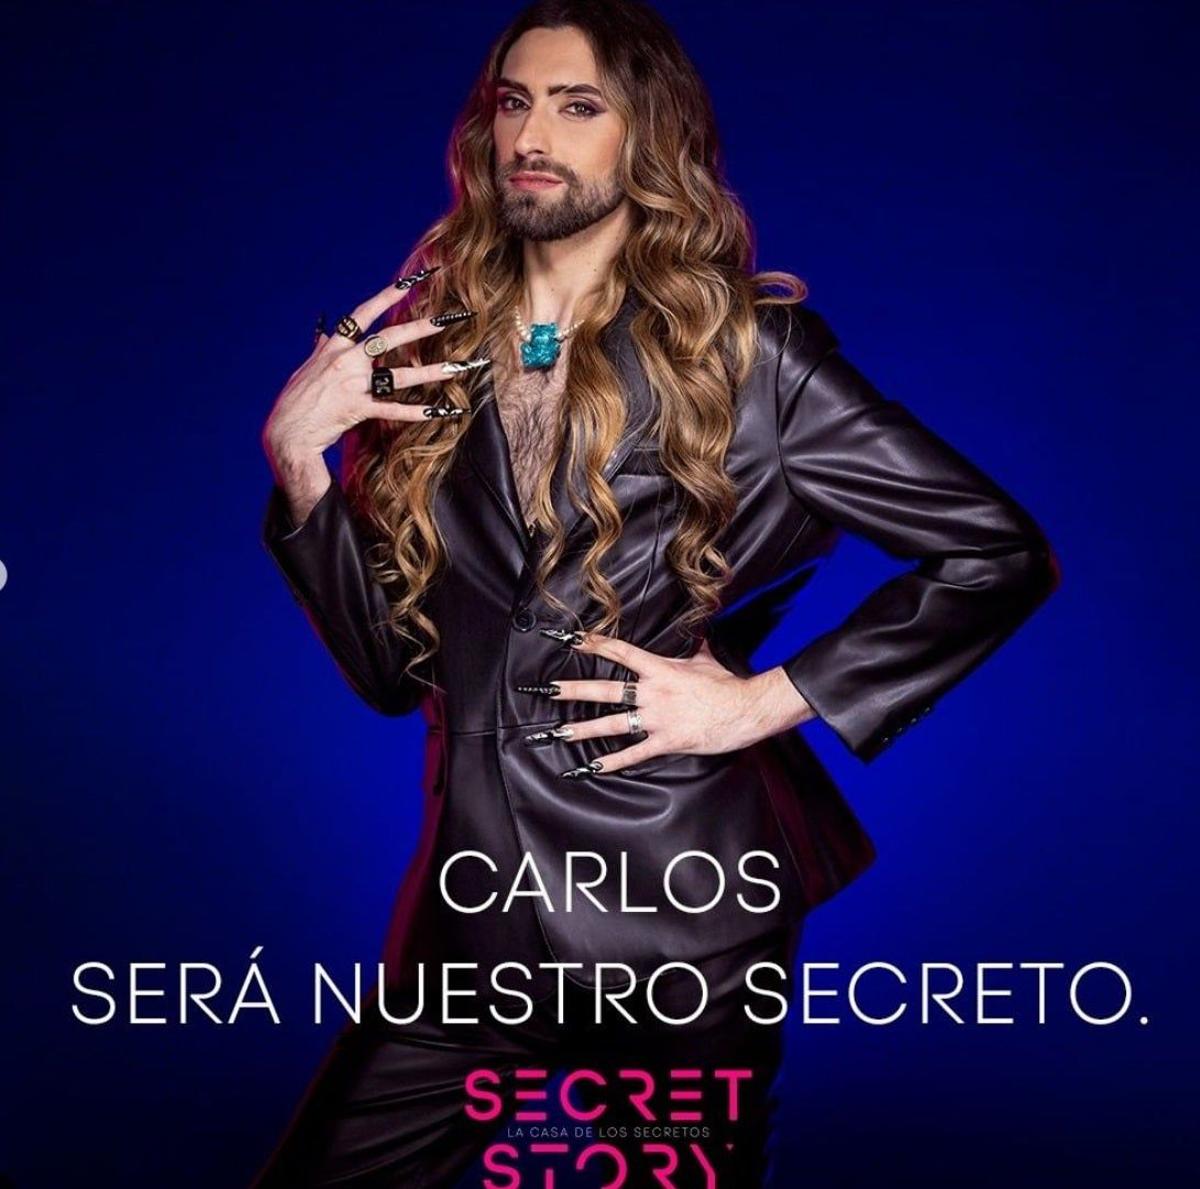 'Secret Story': Carlos será nuestro secreto